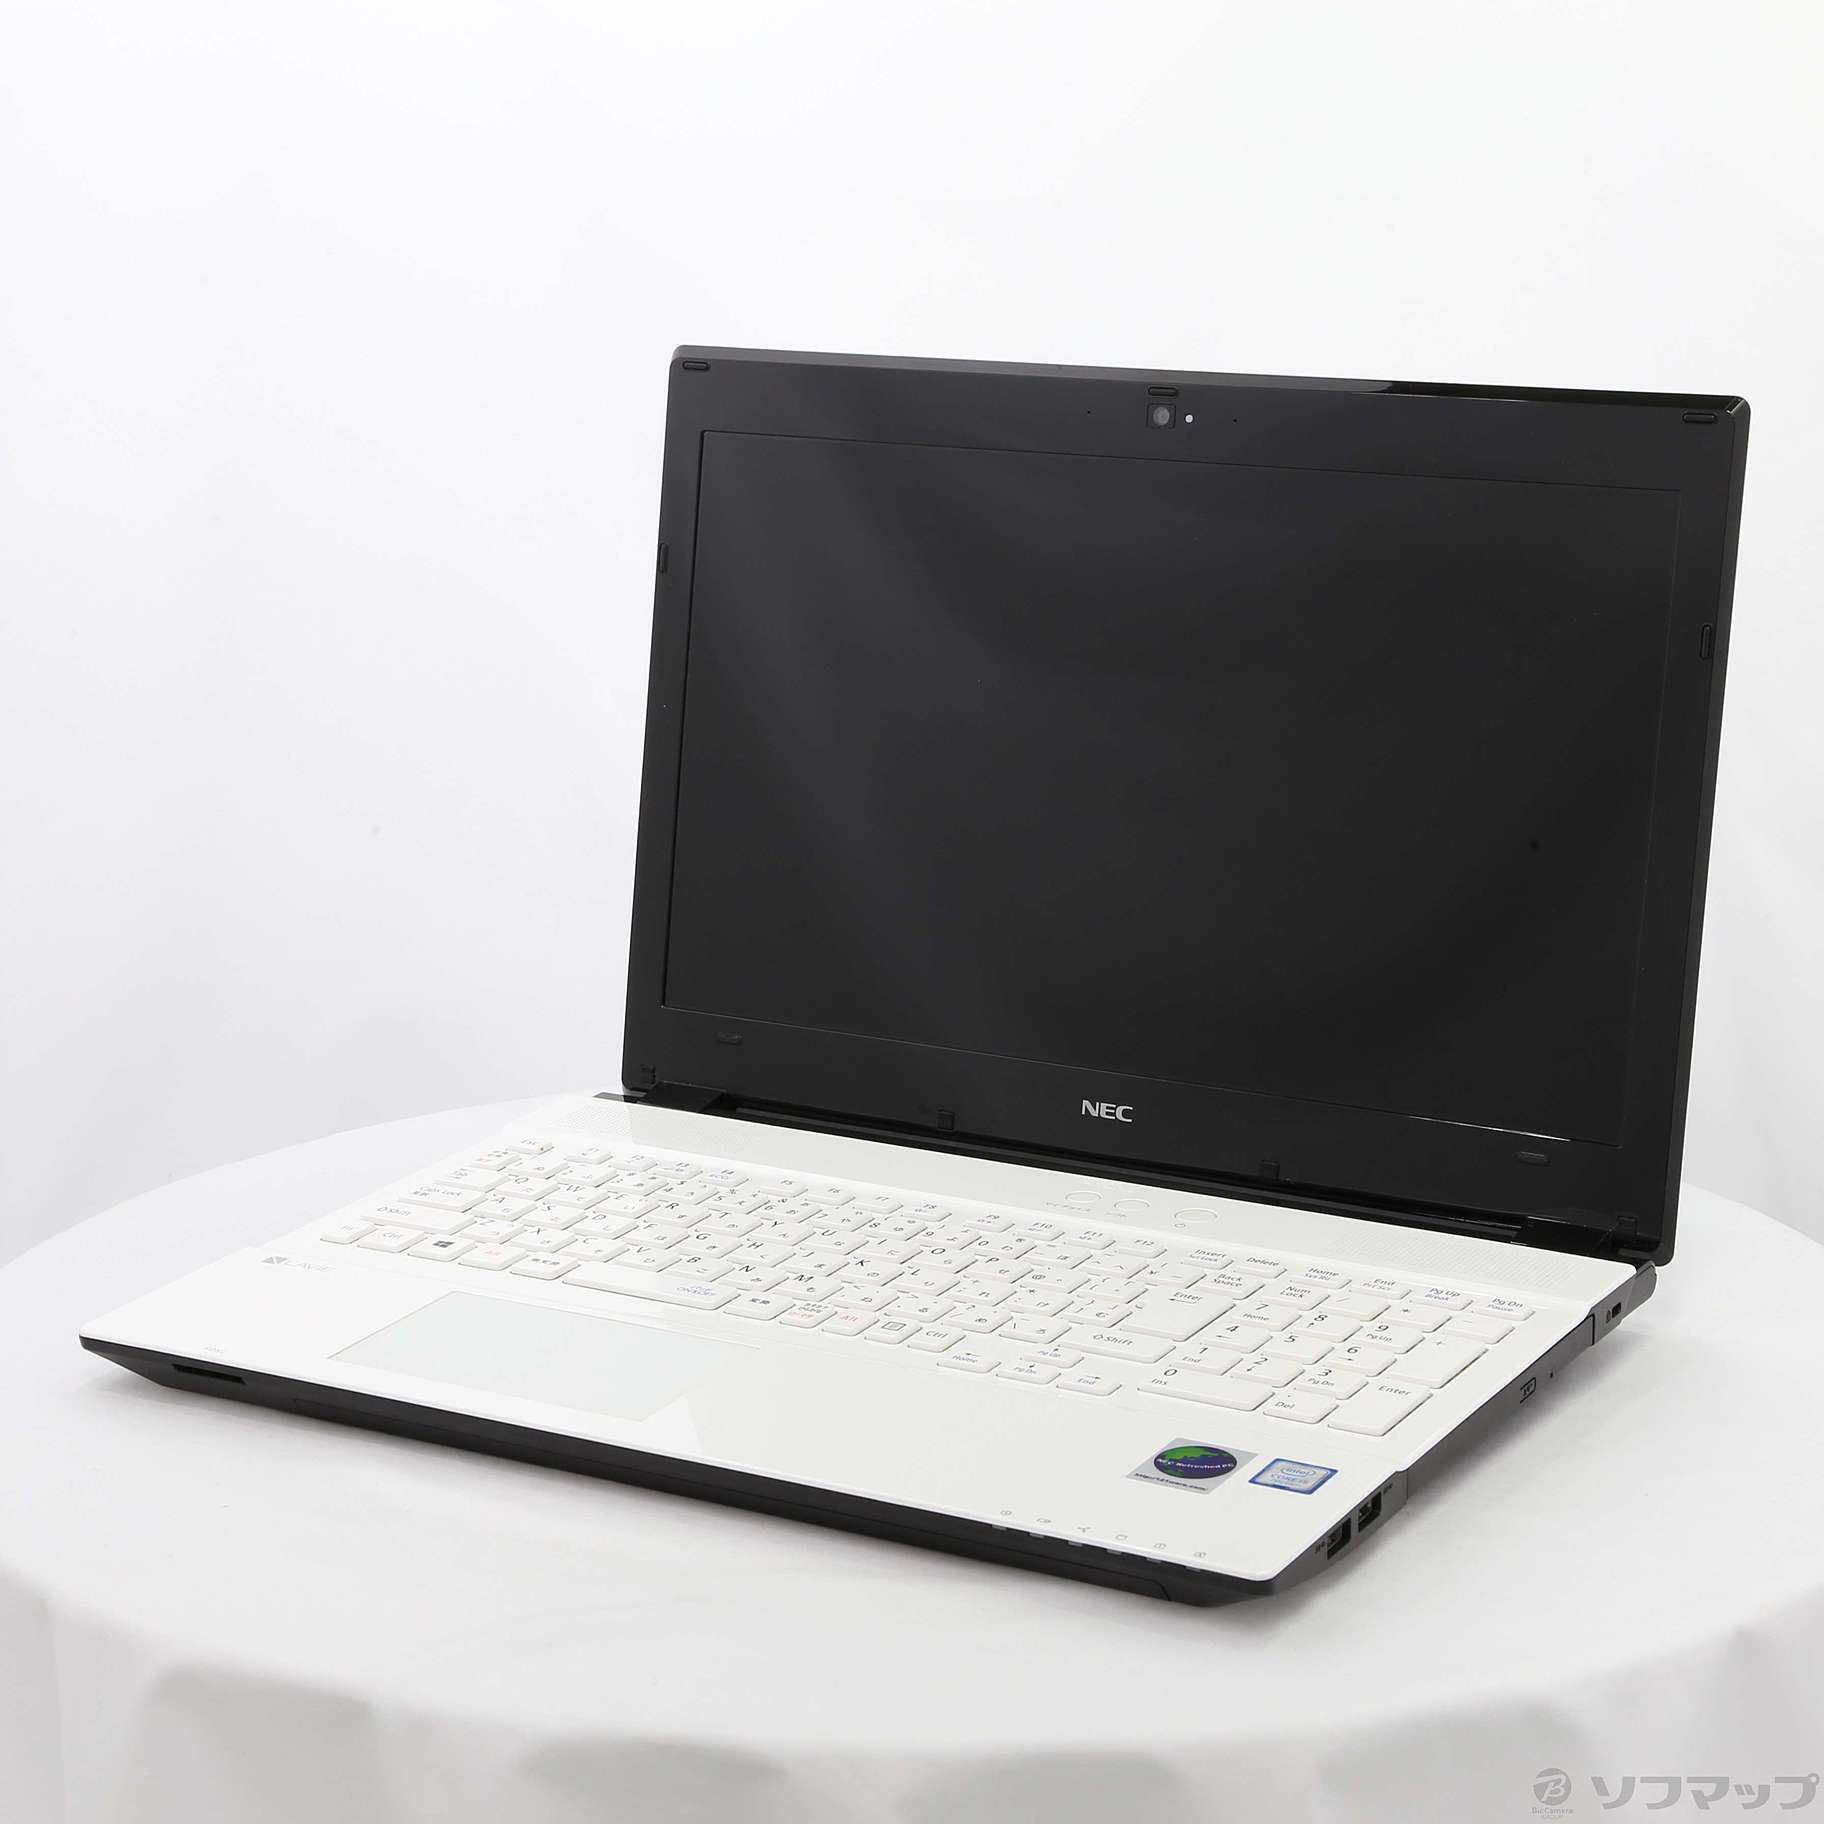 中古 Lavie Direct Ns Pc Gn254frdb Nec Refreshed Pc Windows 10 メーカー保証あり リコレ ソフマップの中古通販サイト